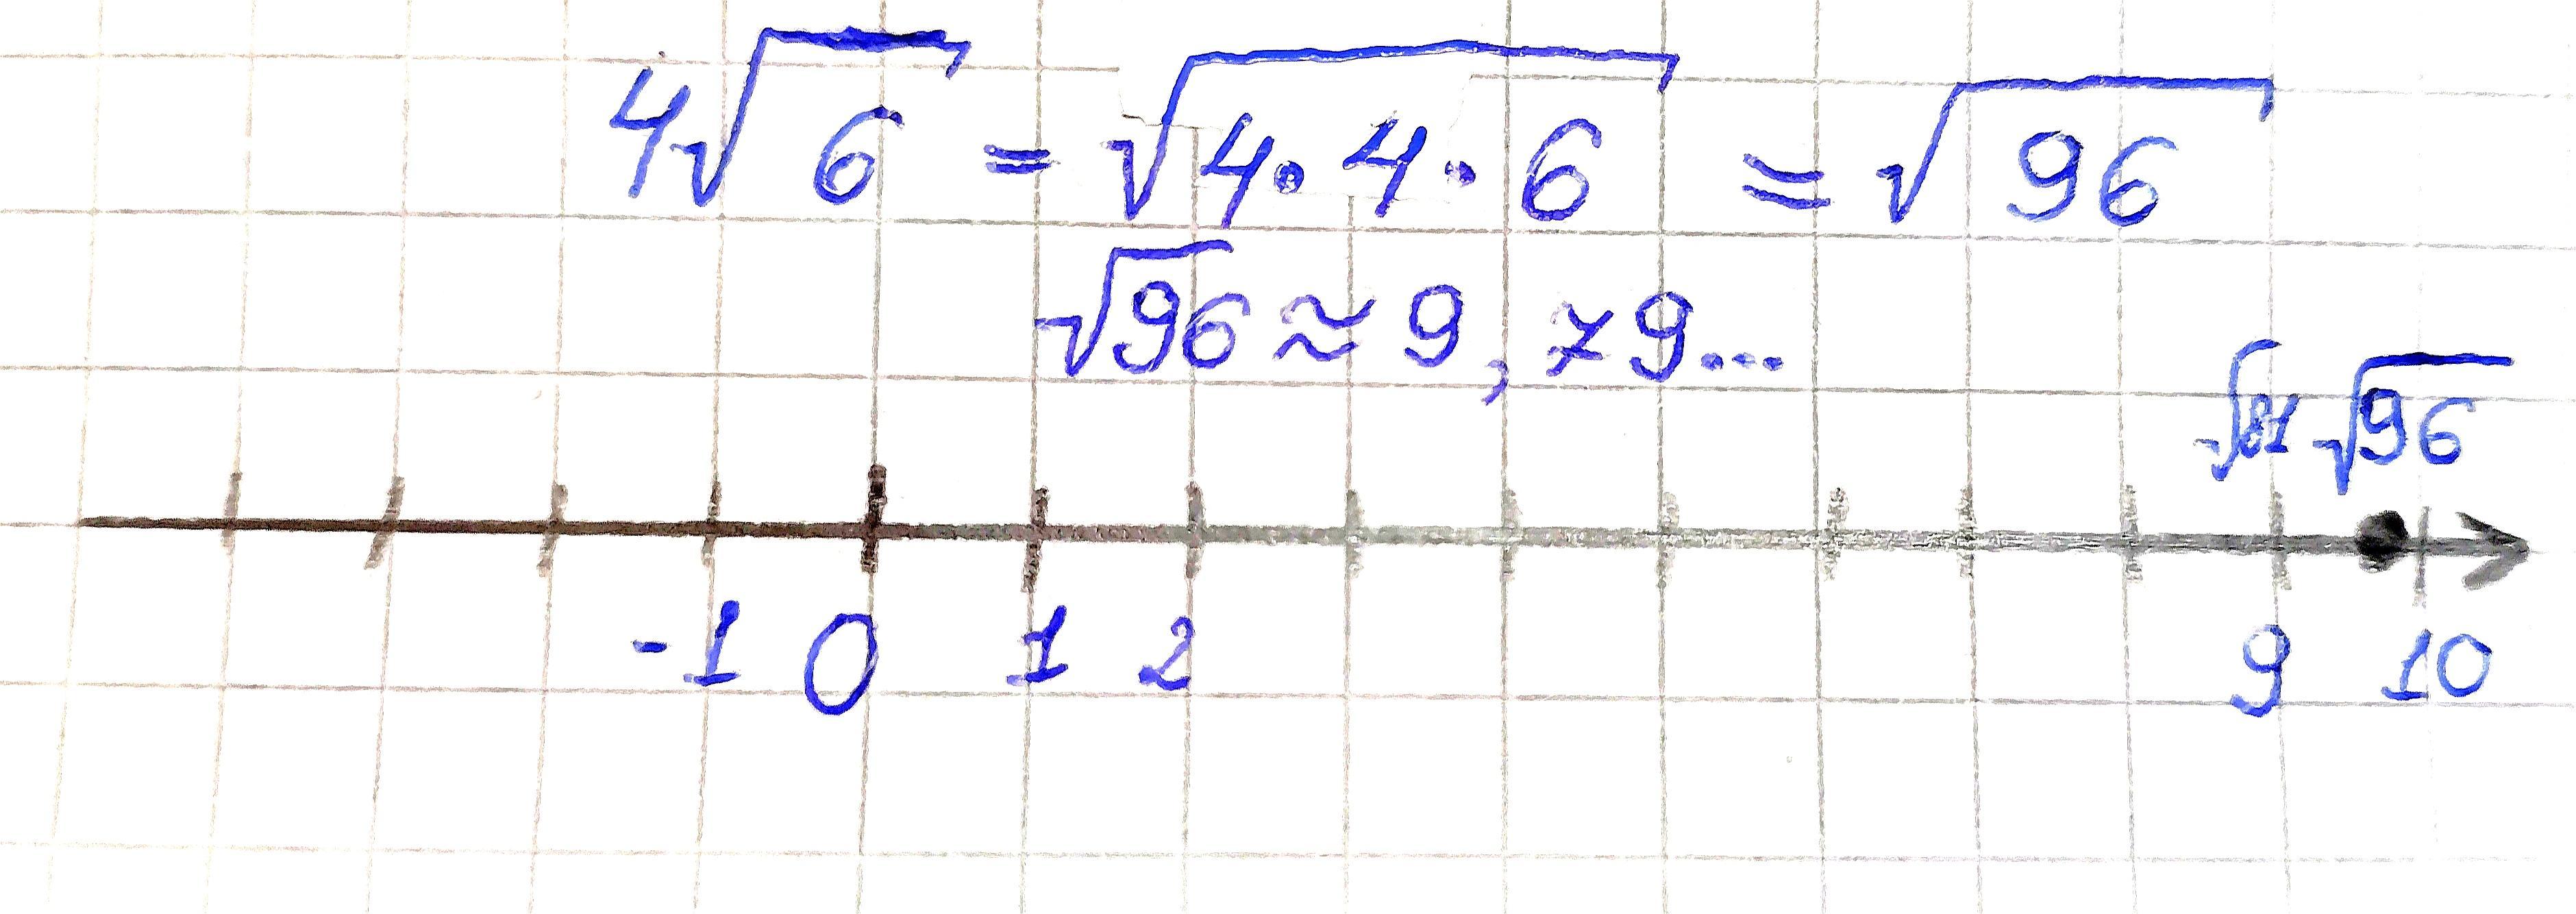 Отметьте на координатной прямой число 4 6.. Отметьте на координатной прямой число √34. Отметьте на координатной прямой число 4√11. Отметь на координатной прямой число √178.